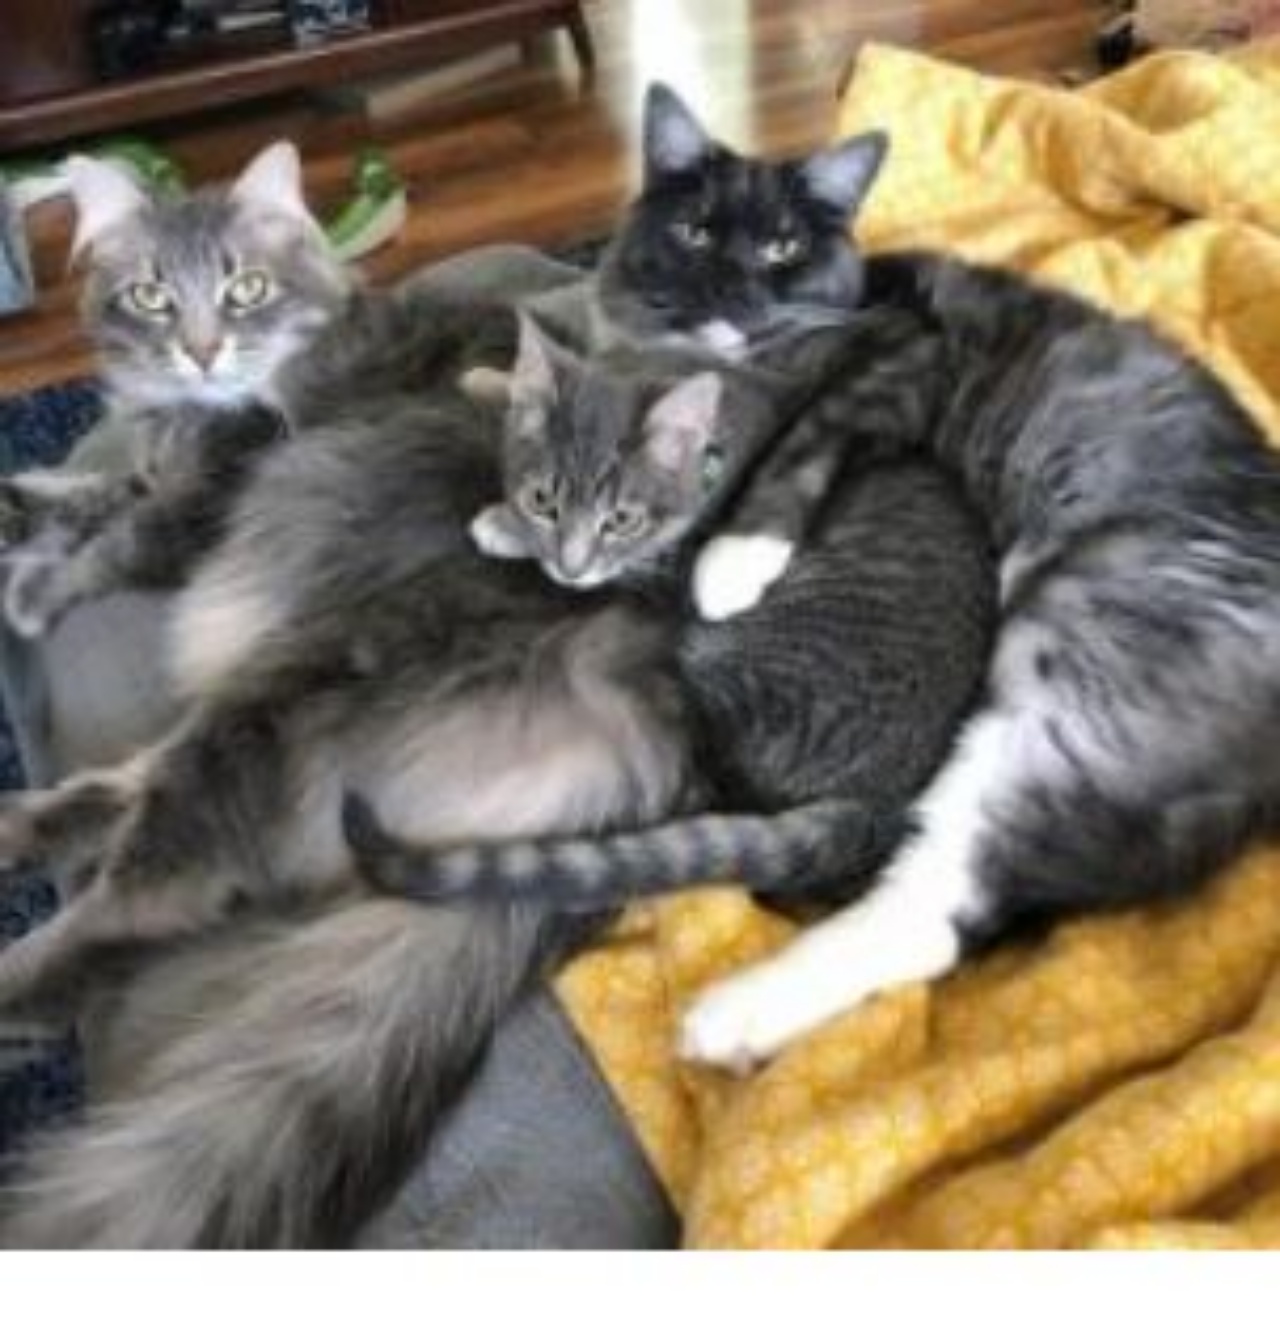 Tre gatti si rilassano insieme sul divano
